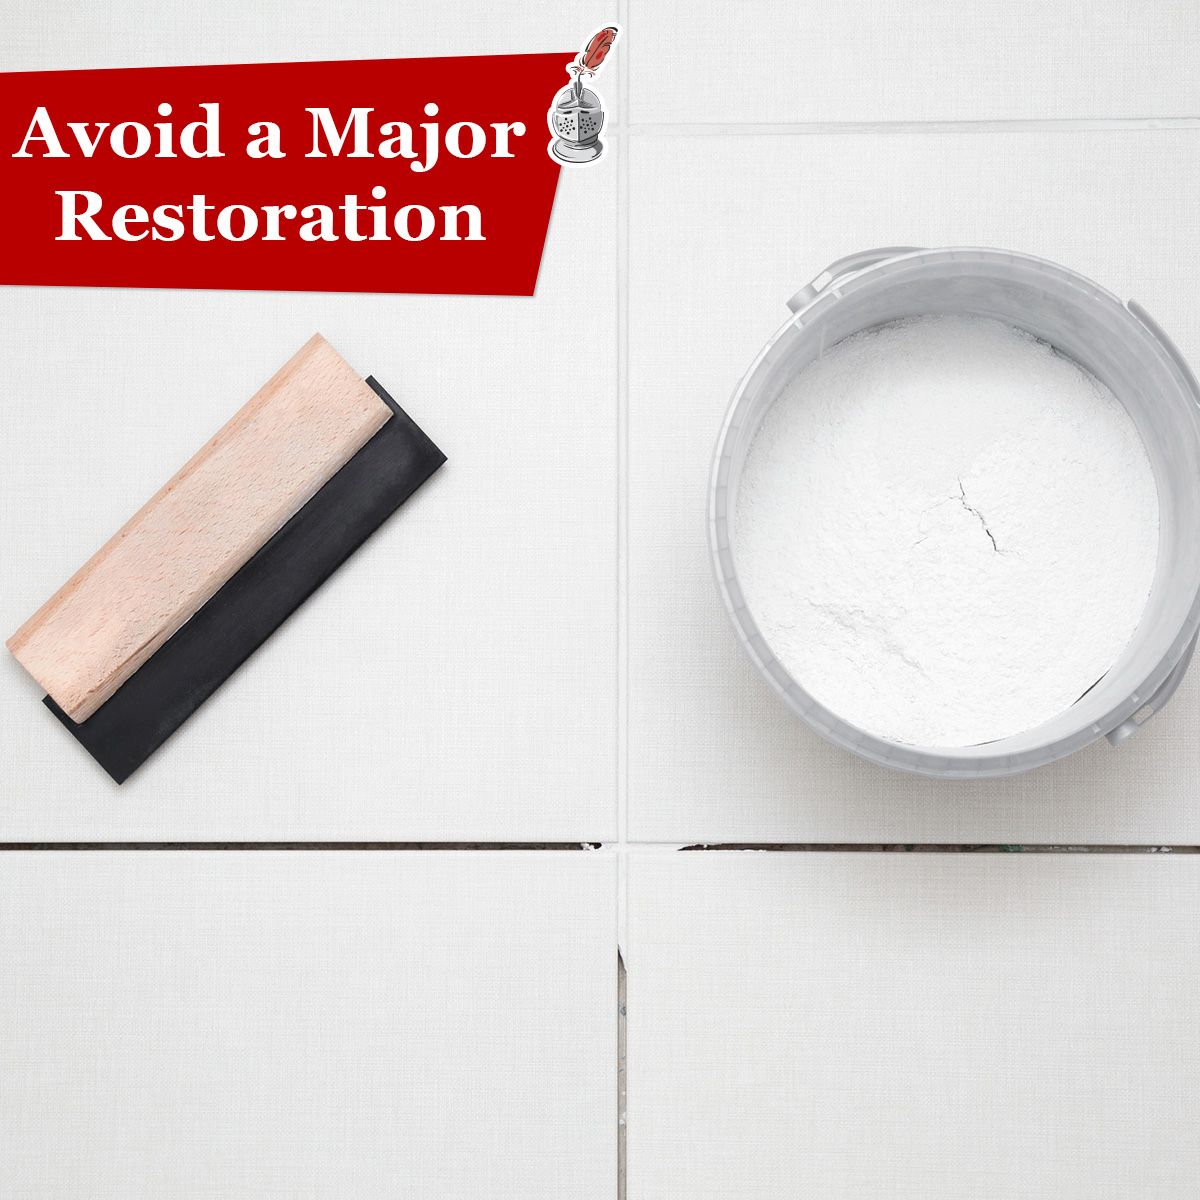 Avoid a Major Restoration